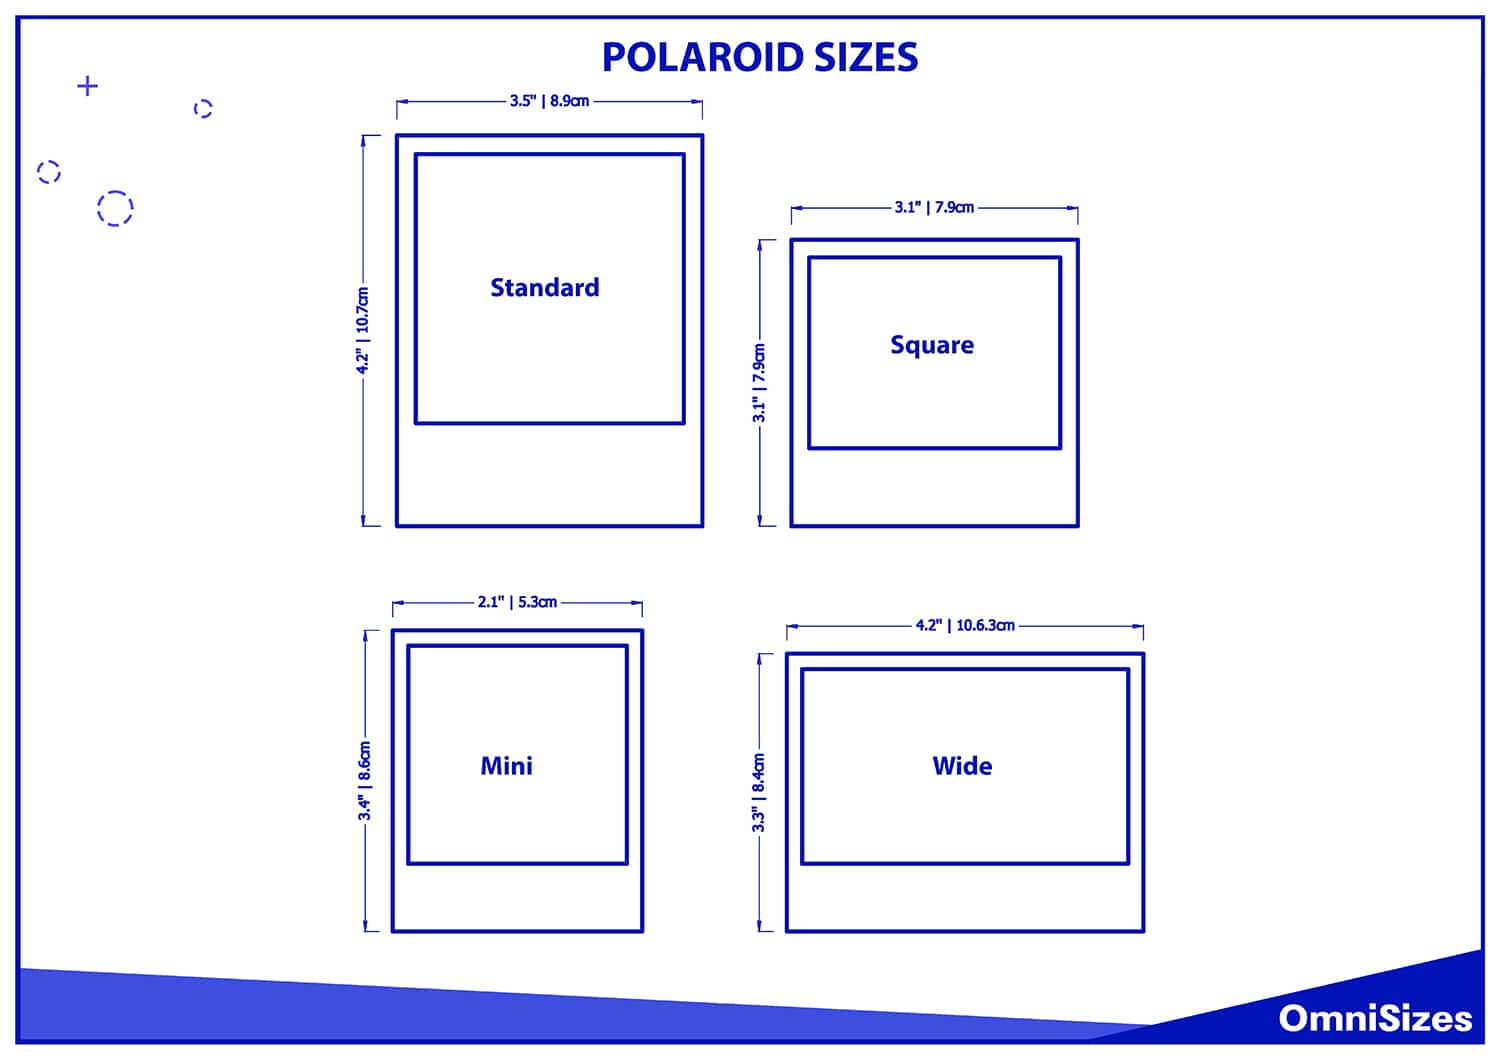 Polaroid sizes